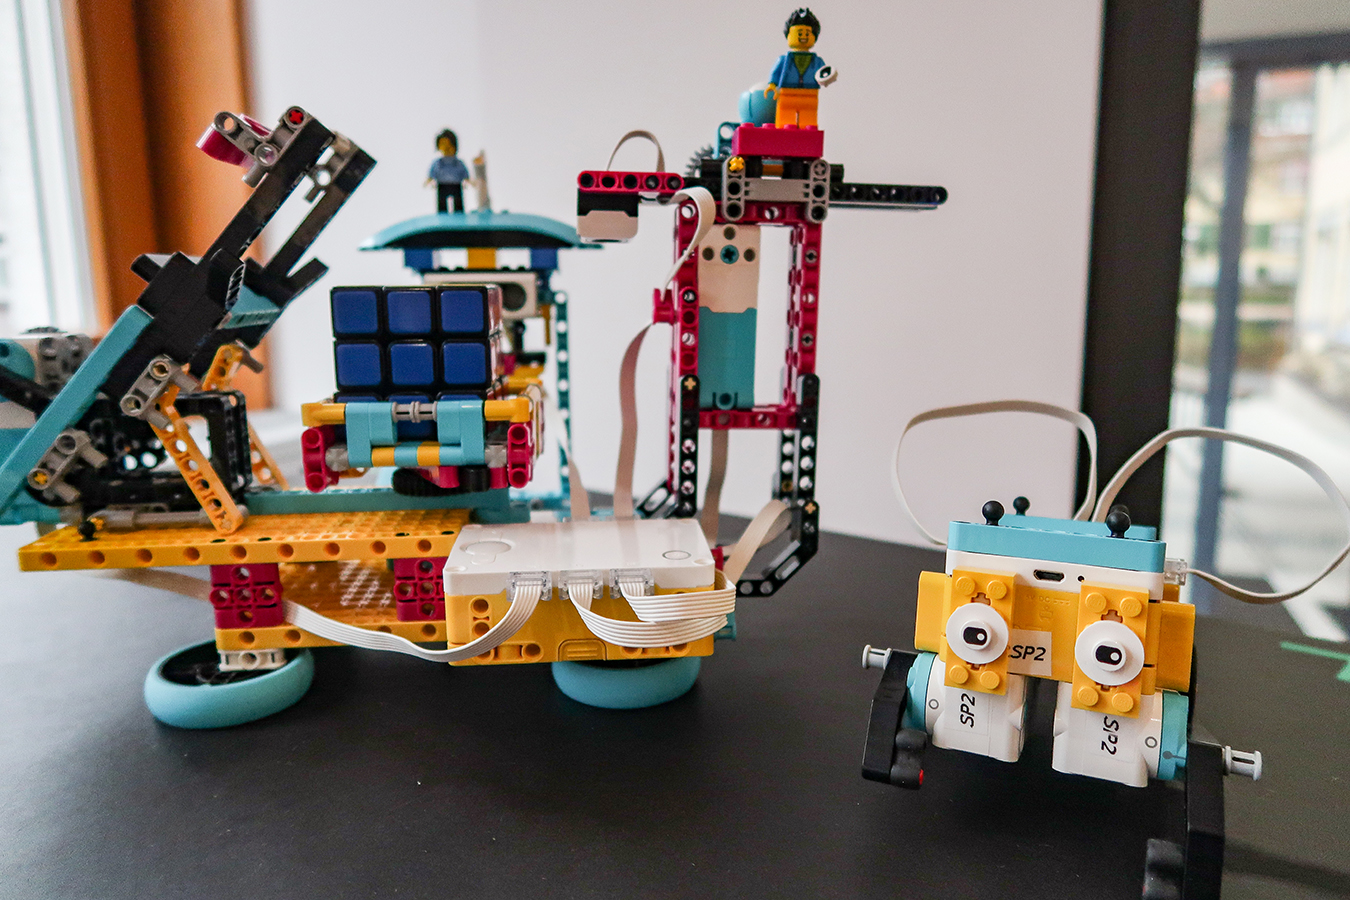 Auf einem Tisch stehen zwei Roboter die aus bunten Legosteinen zusammengesetzt worden sind.